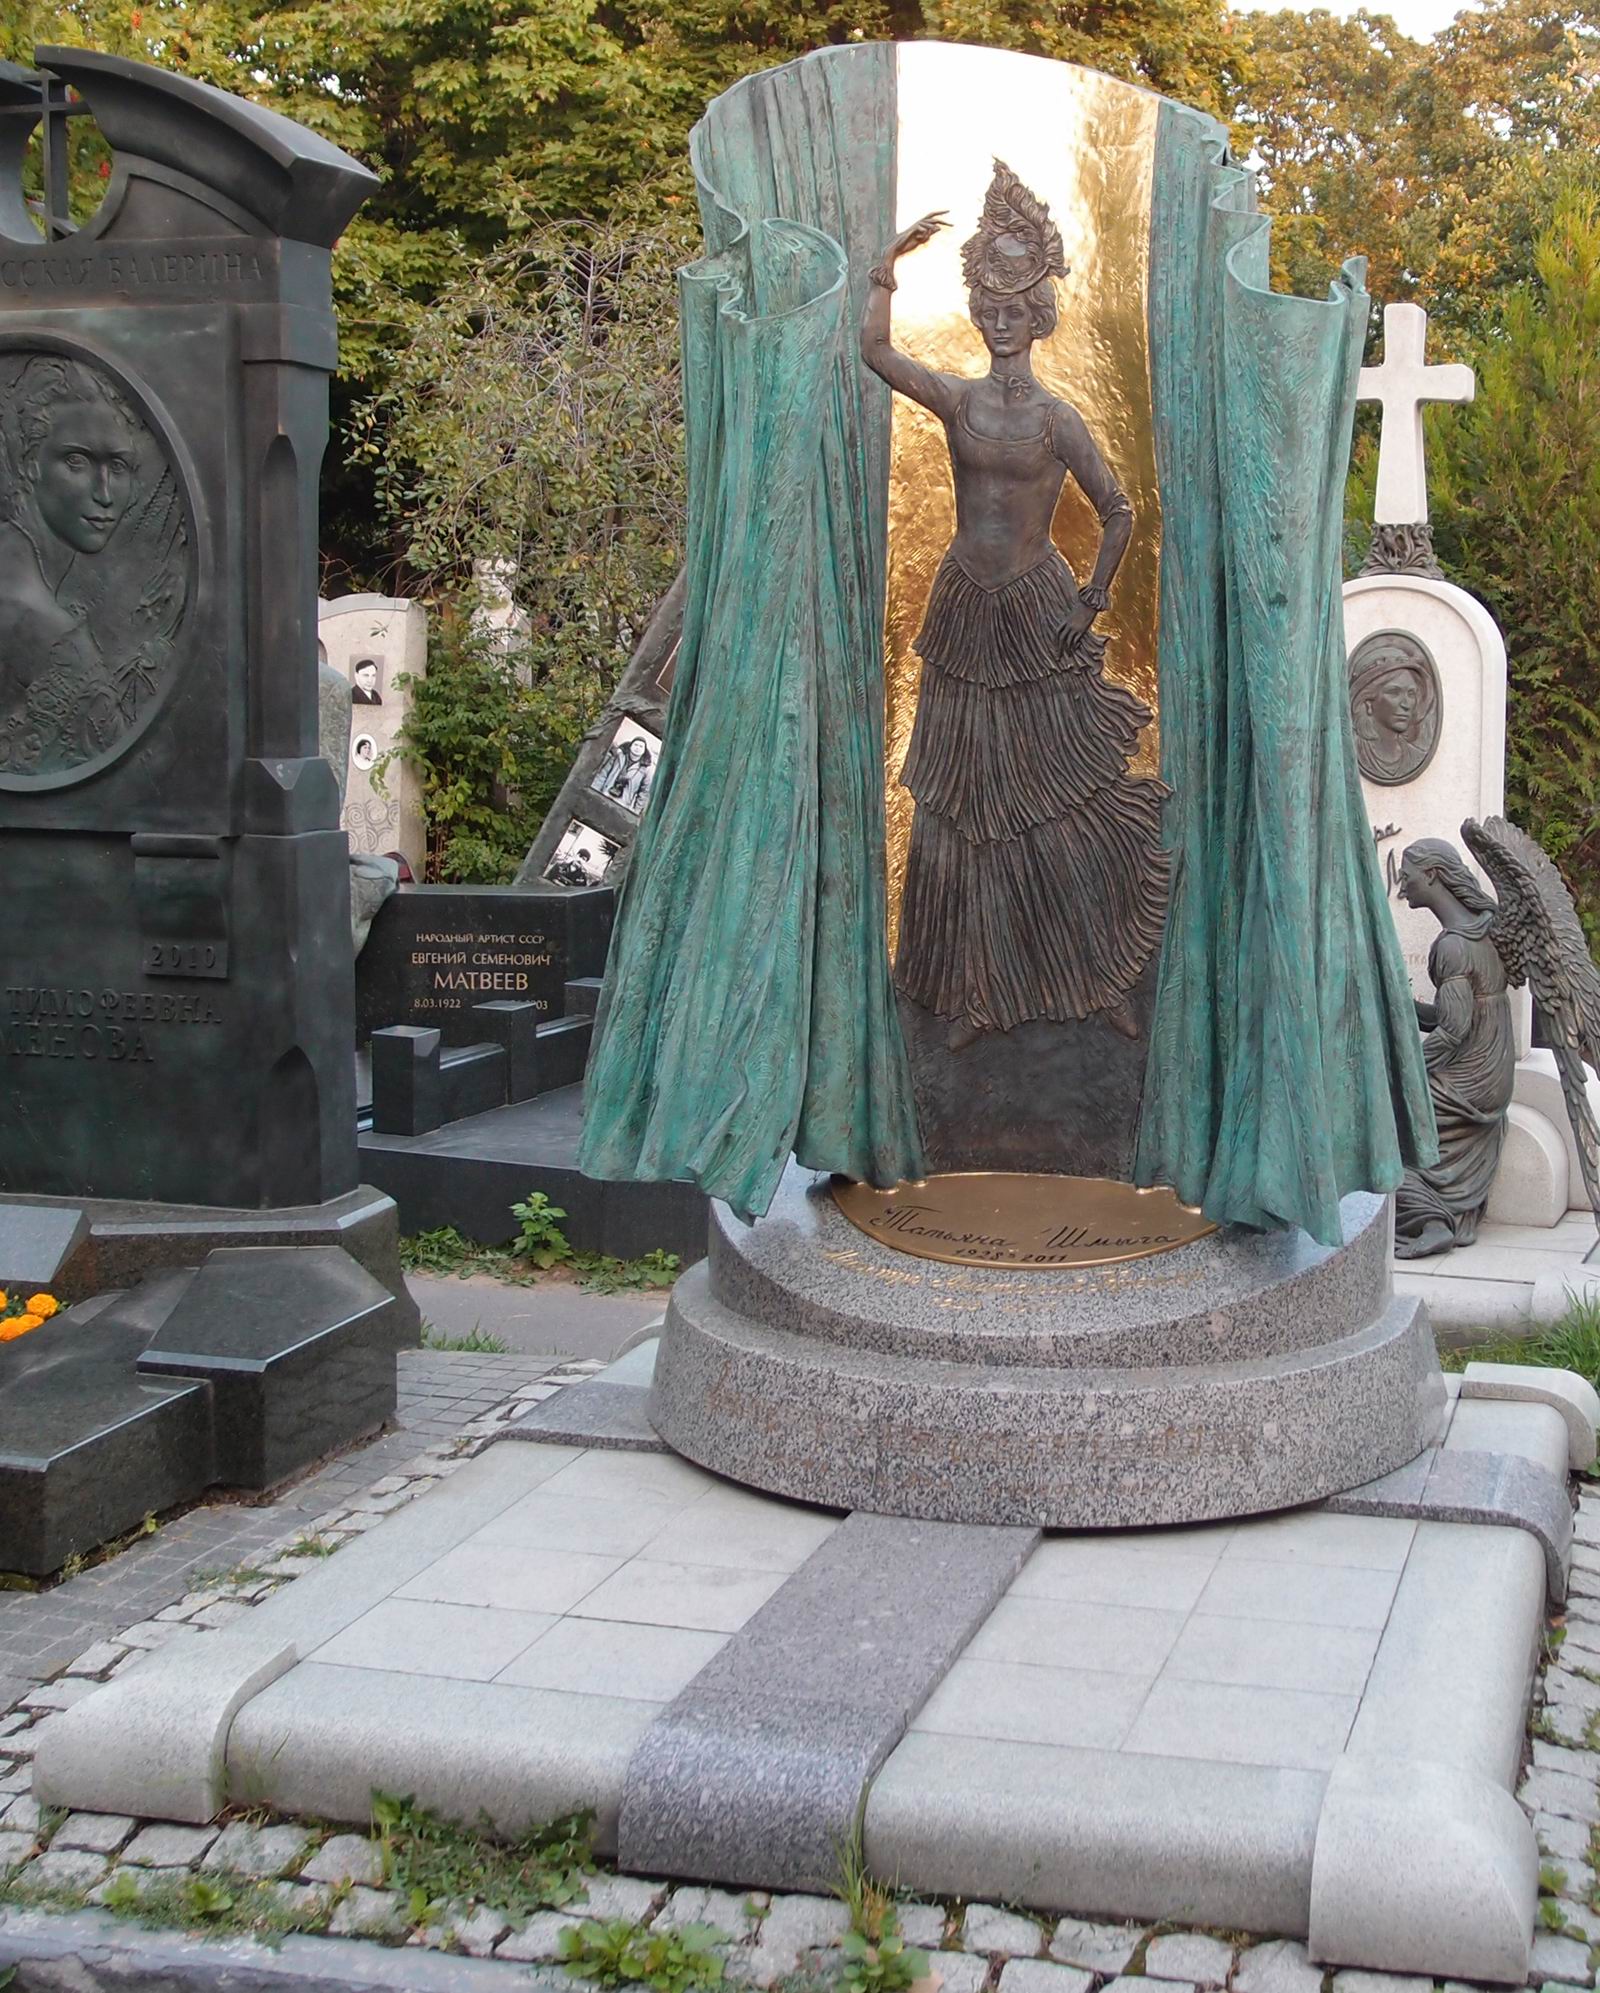 Памятник на могиле Шмыги Т.И. (1928-2011), ск. Д.Успенская, В.Шанов, на Новодевичьем кладбище (10-10-7). Нажмите левую кнопку мыши чтобы увидеть фрагмент памятника.